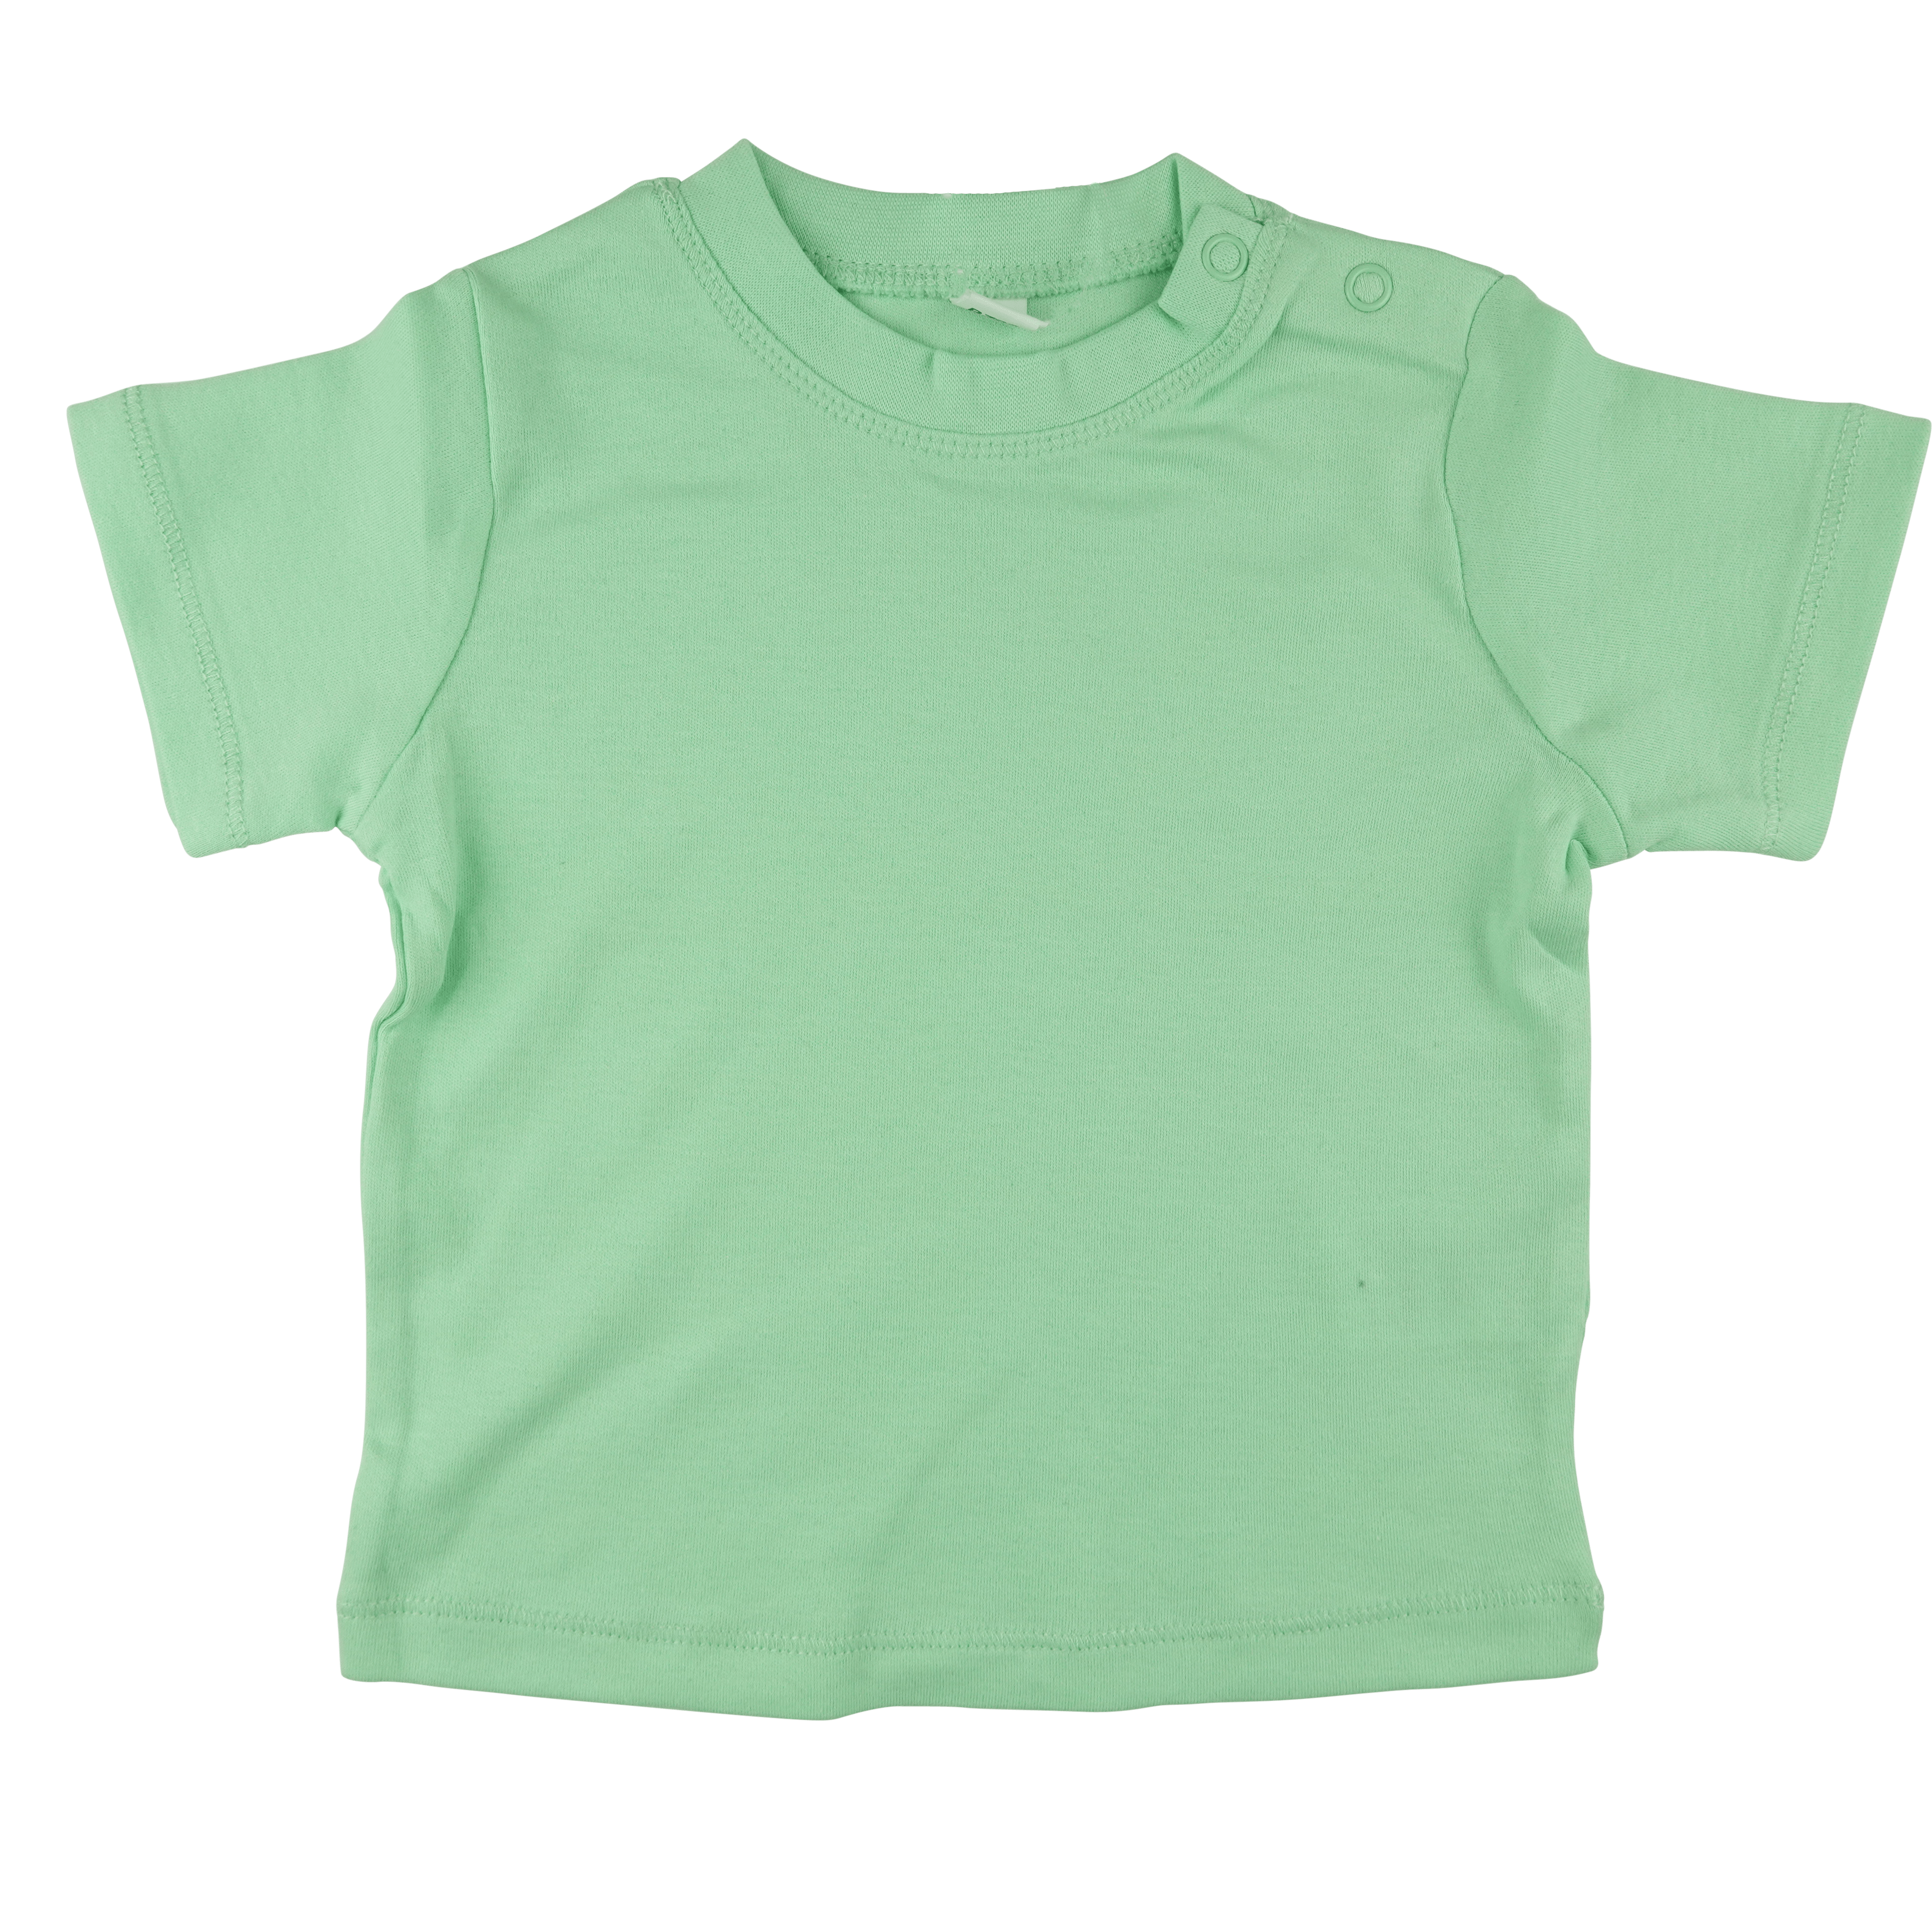 t-shirt-baby-korte-mouw-mint-groen-voorkant-bul